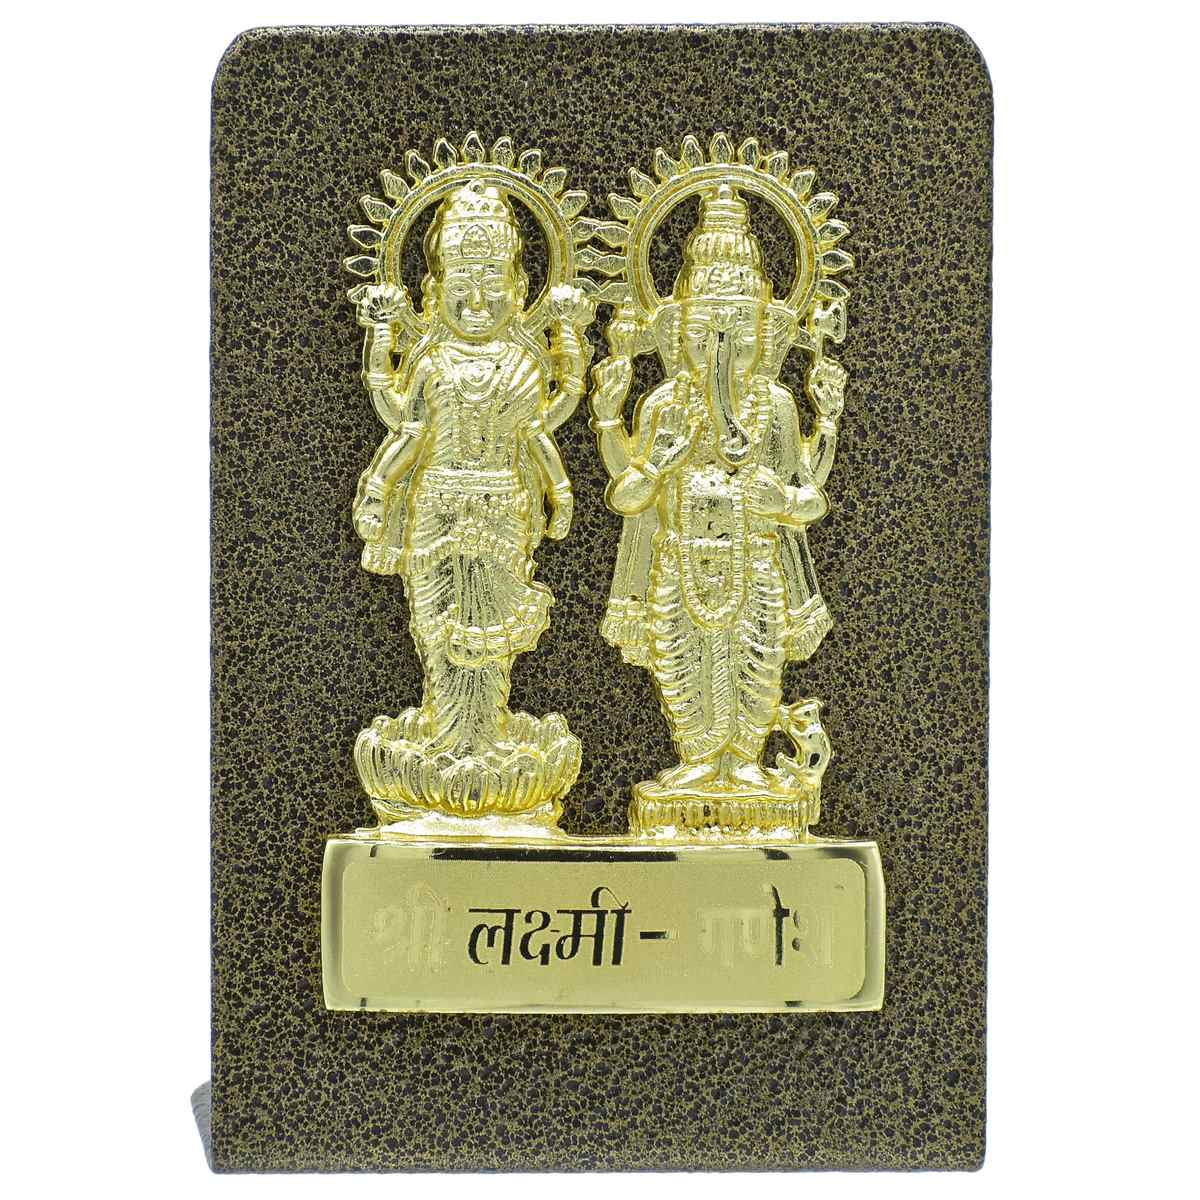 jags-mumbai Corporate Gift set Destop Top Gold Shri Laxmi Ganesh Plate Gold Black TT660GBK